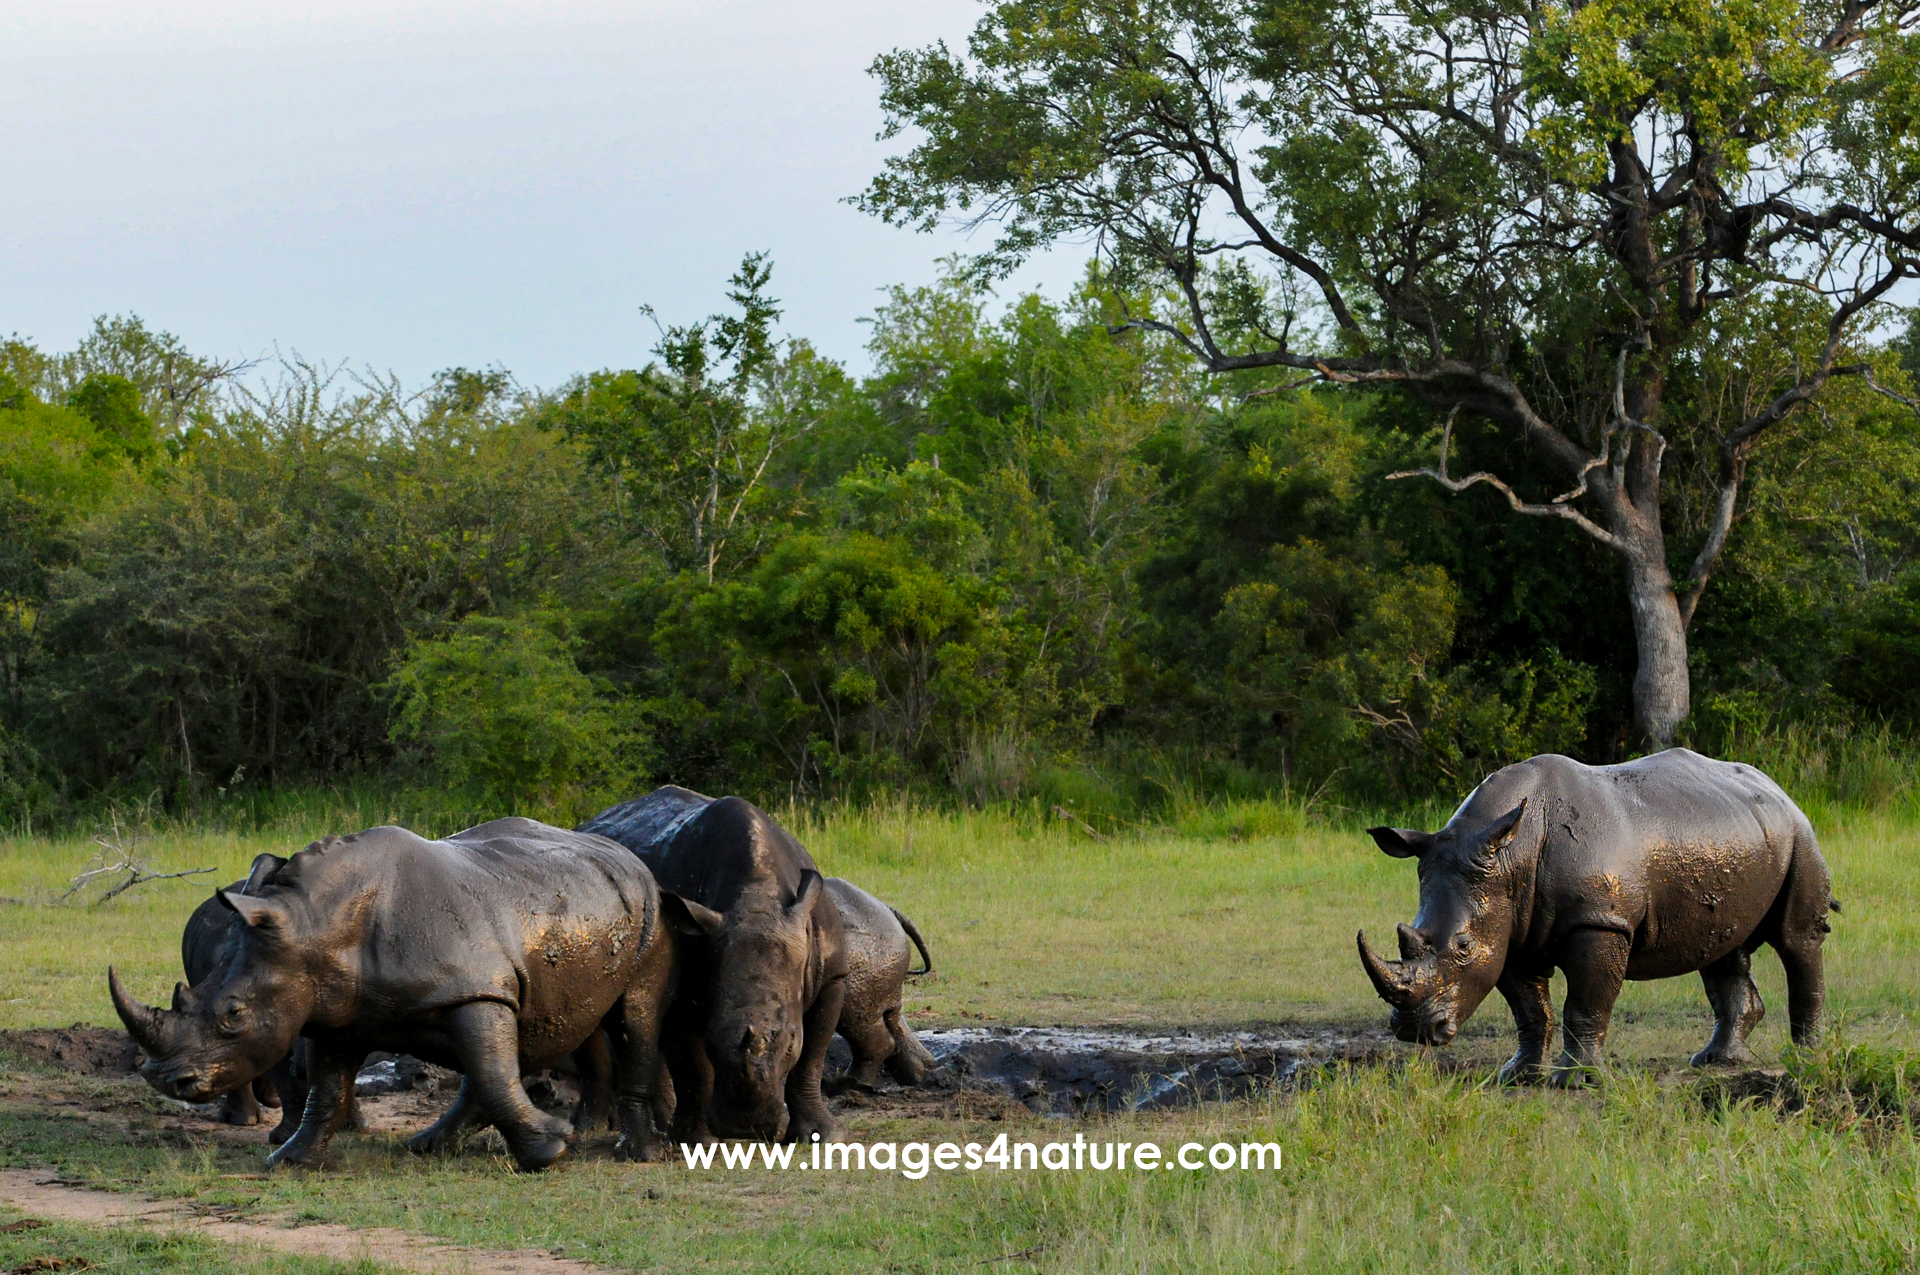 A group of rhinos in the bush enjoying a bath in the mud